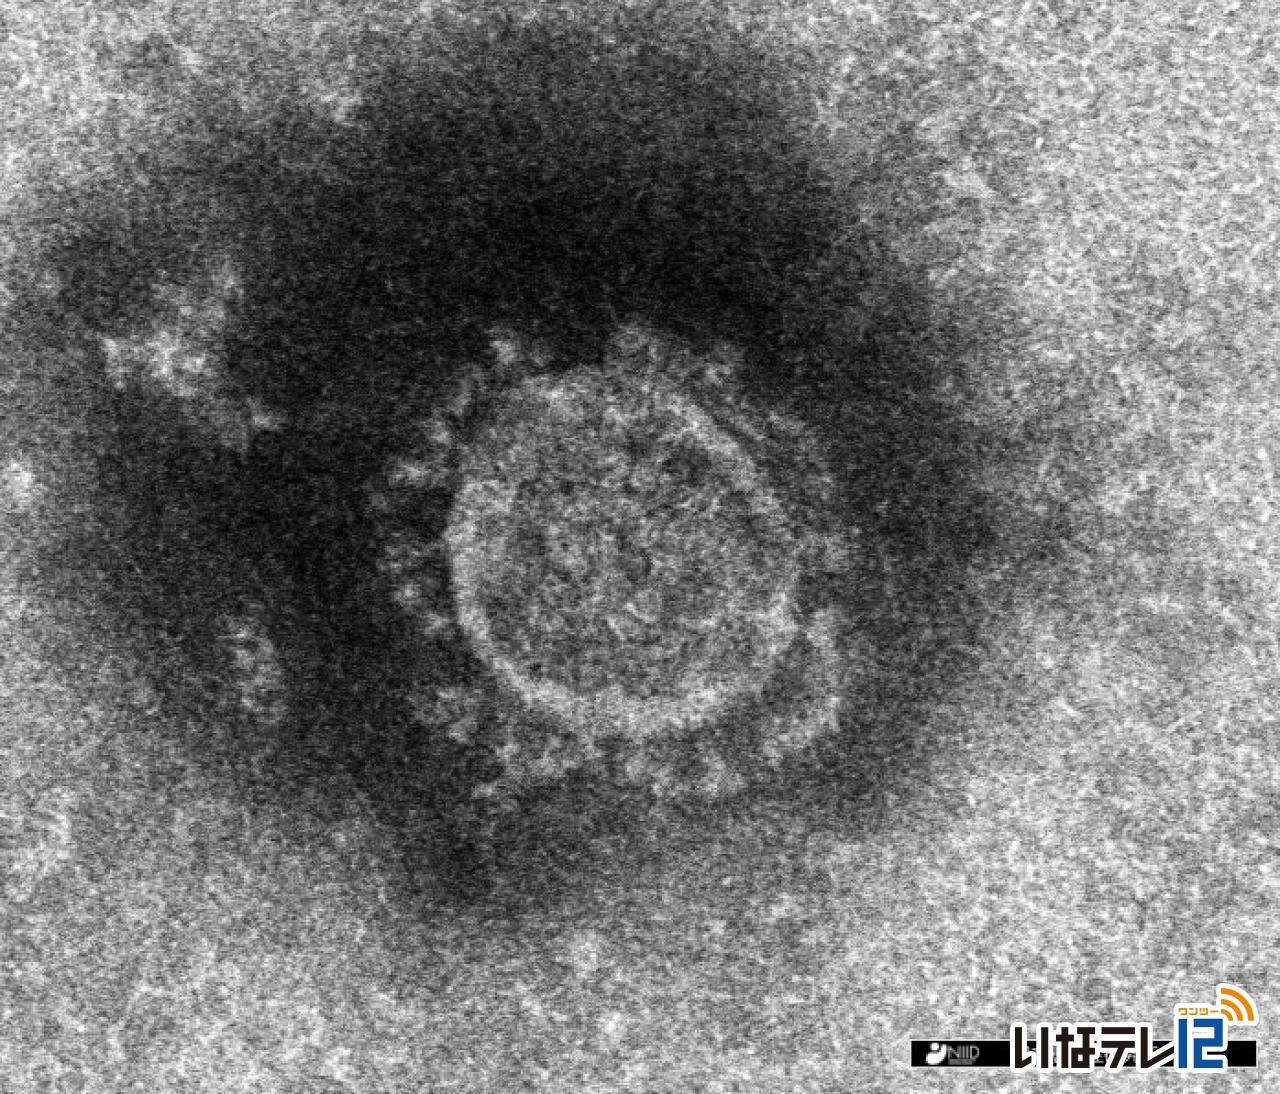 長野県内で上伊那の３４人を含む４３３人の新型コロナ感染確認